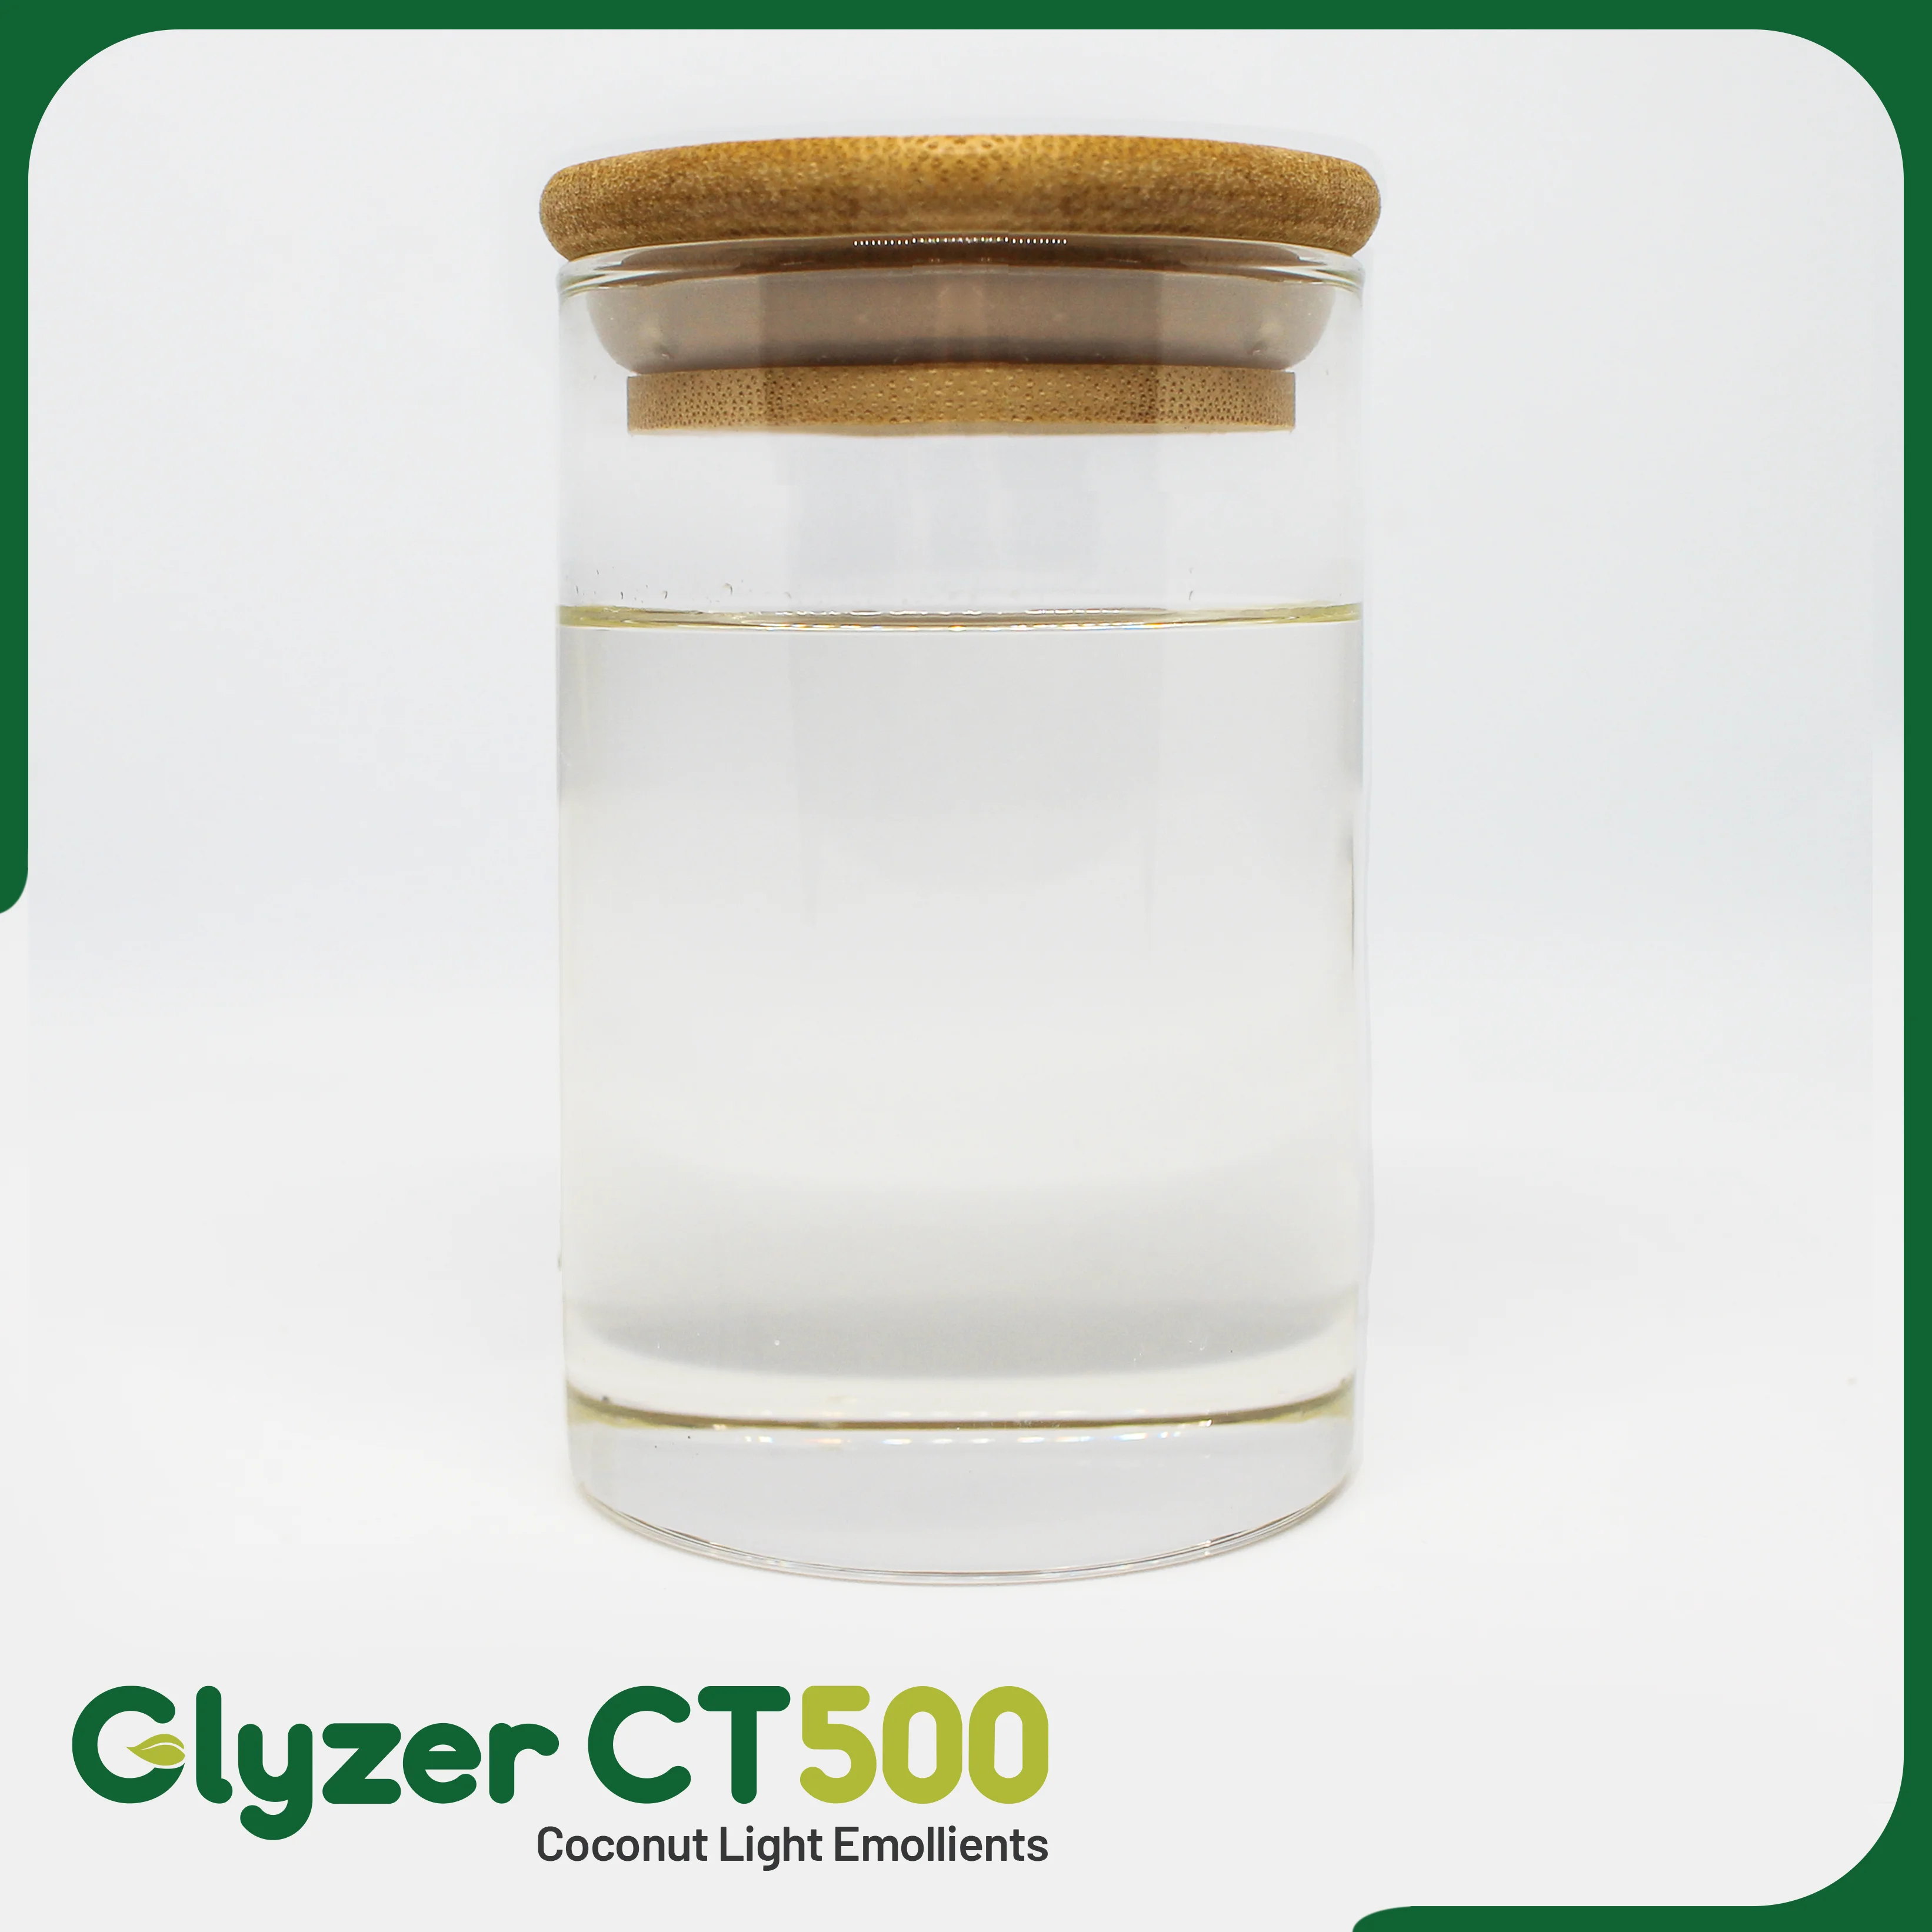 GLYZER CT500